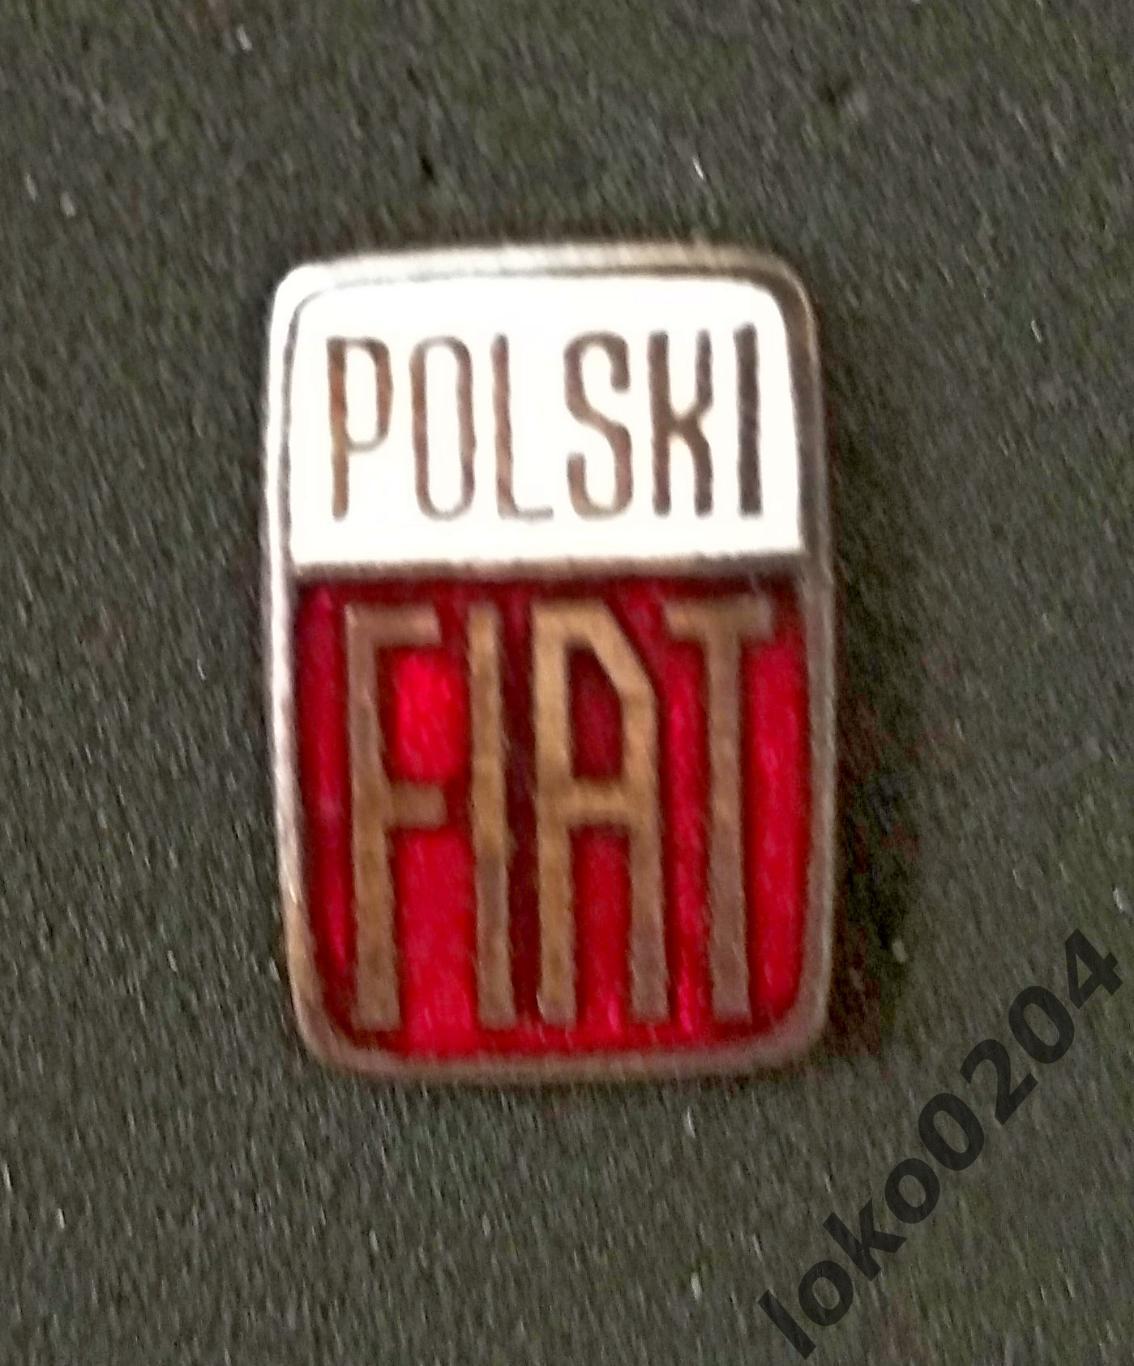 Польский ФИАТ - авто/логотип.